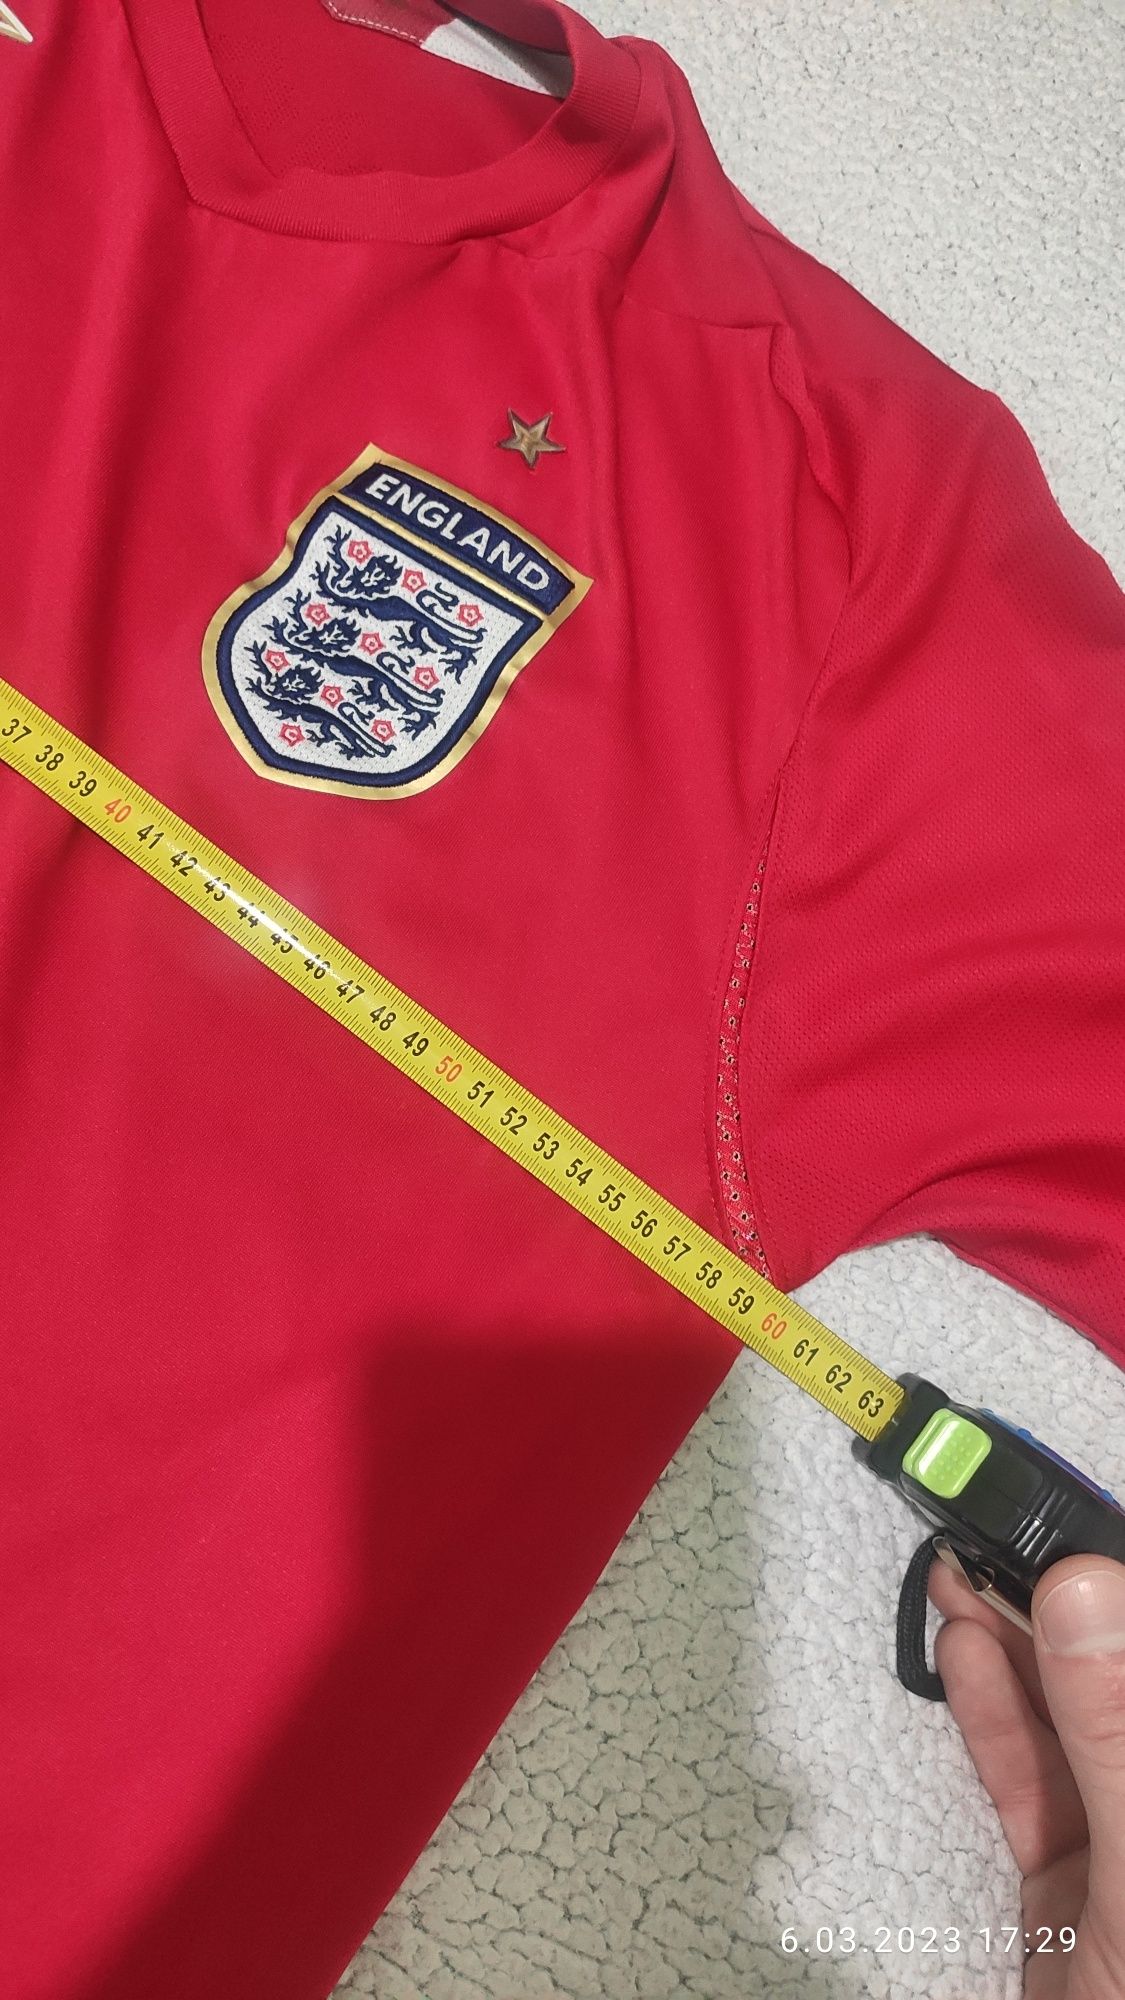 Koszulka piłkarska Umbro England rozmiar XL.